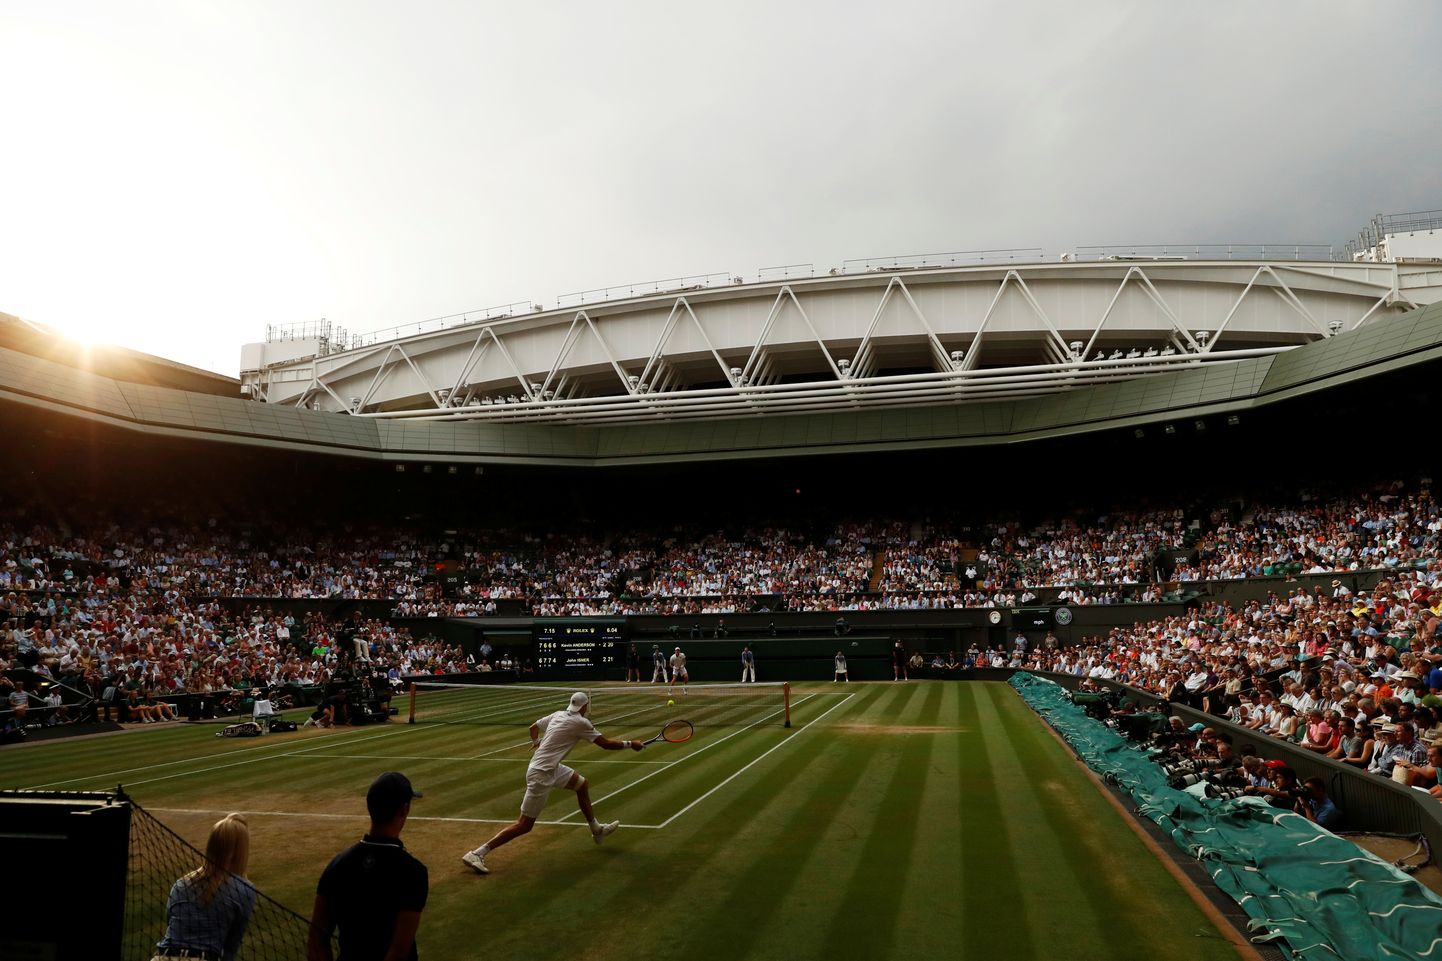 Wimbledoni tenniseturniir toimub järgmisel aastal 1. juulist 14. juulini